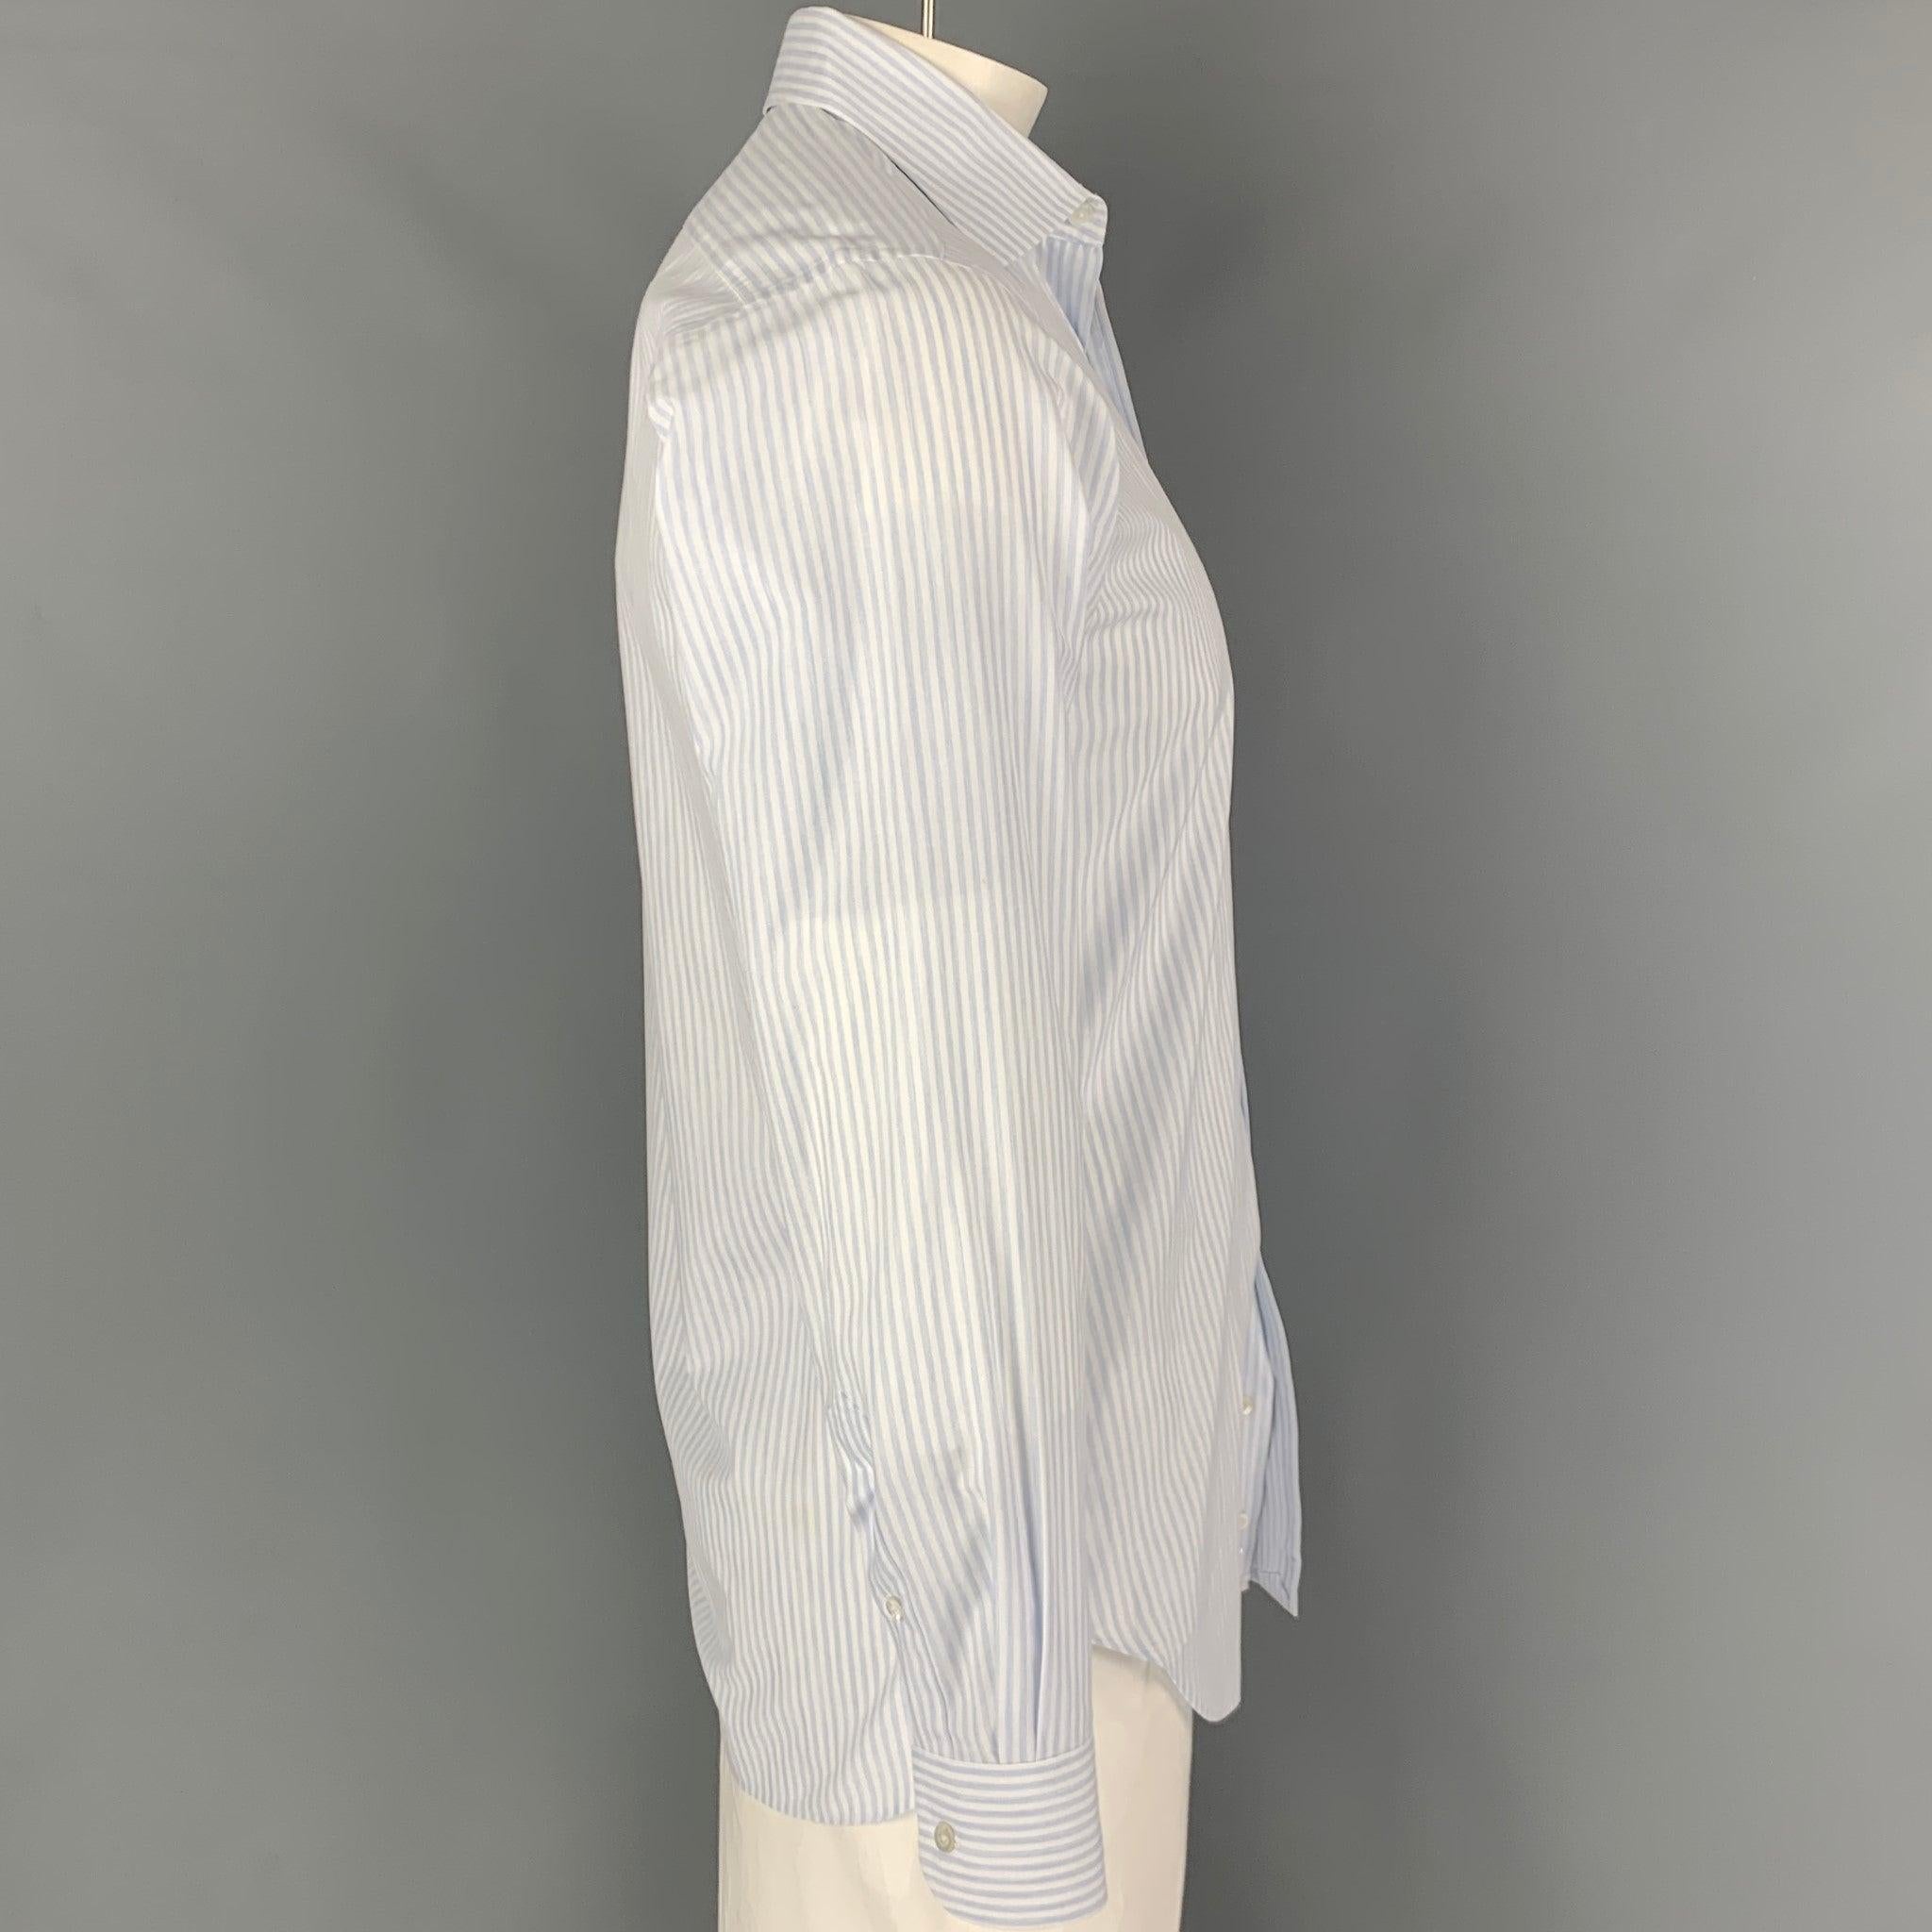 La chemise à manches longues HAMILTON se présente dans une matière à rayures bleues et blanches. Elle présente un style classique, un col large et une fermeture boutonnée. Excellent
Etat d'occasion. Étiquette de tissu enlevée.  

Marqué :   MARS18 